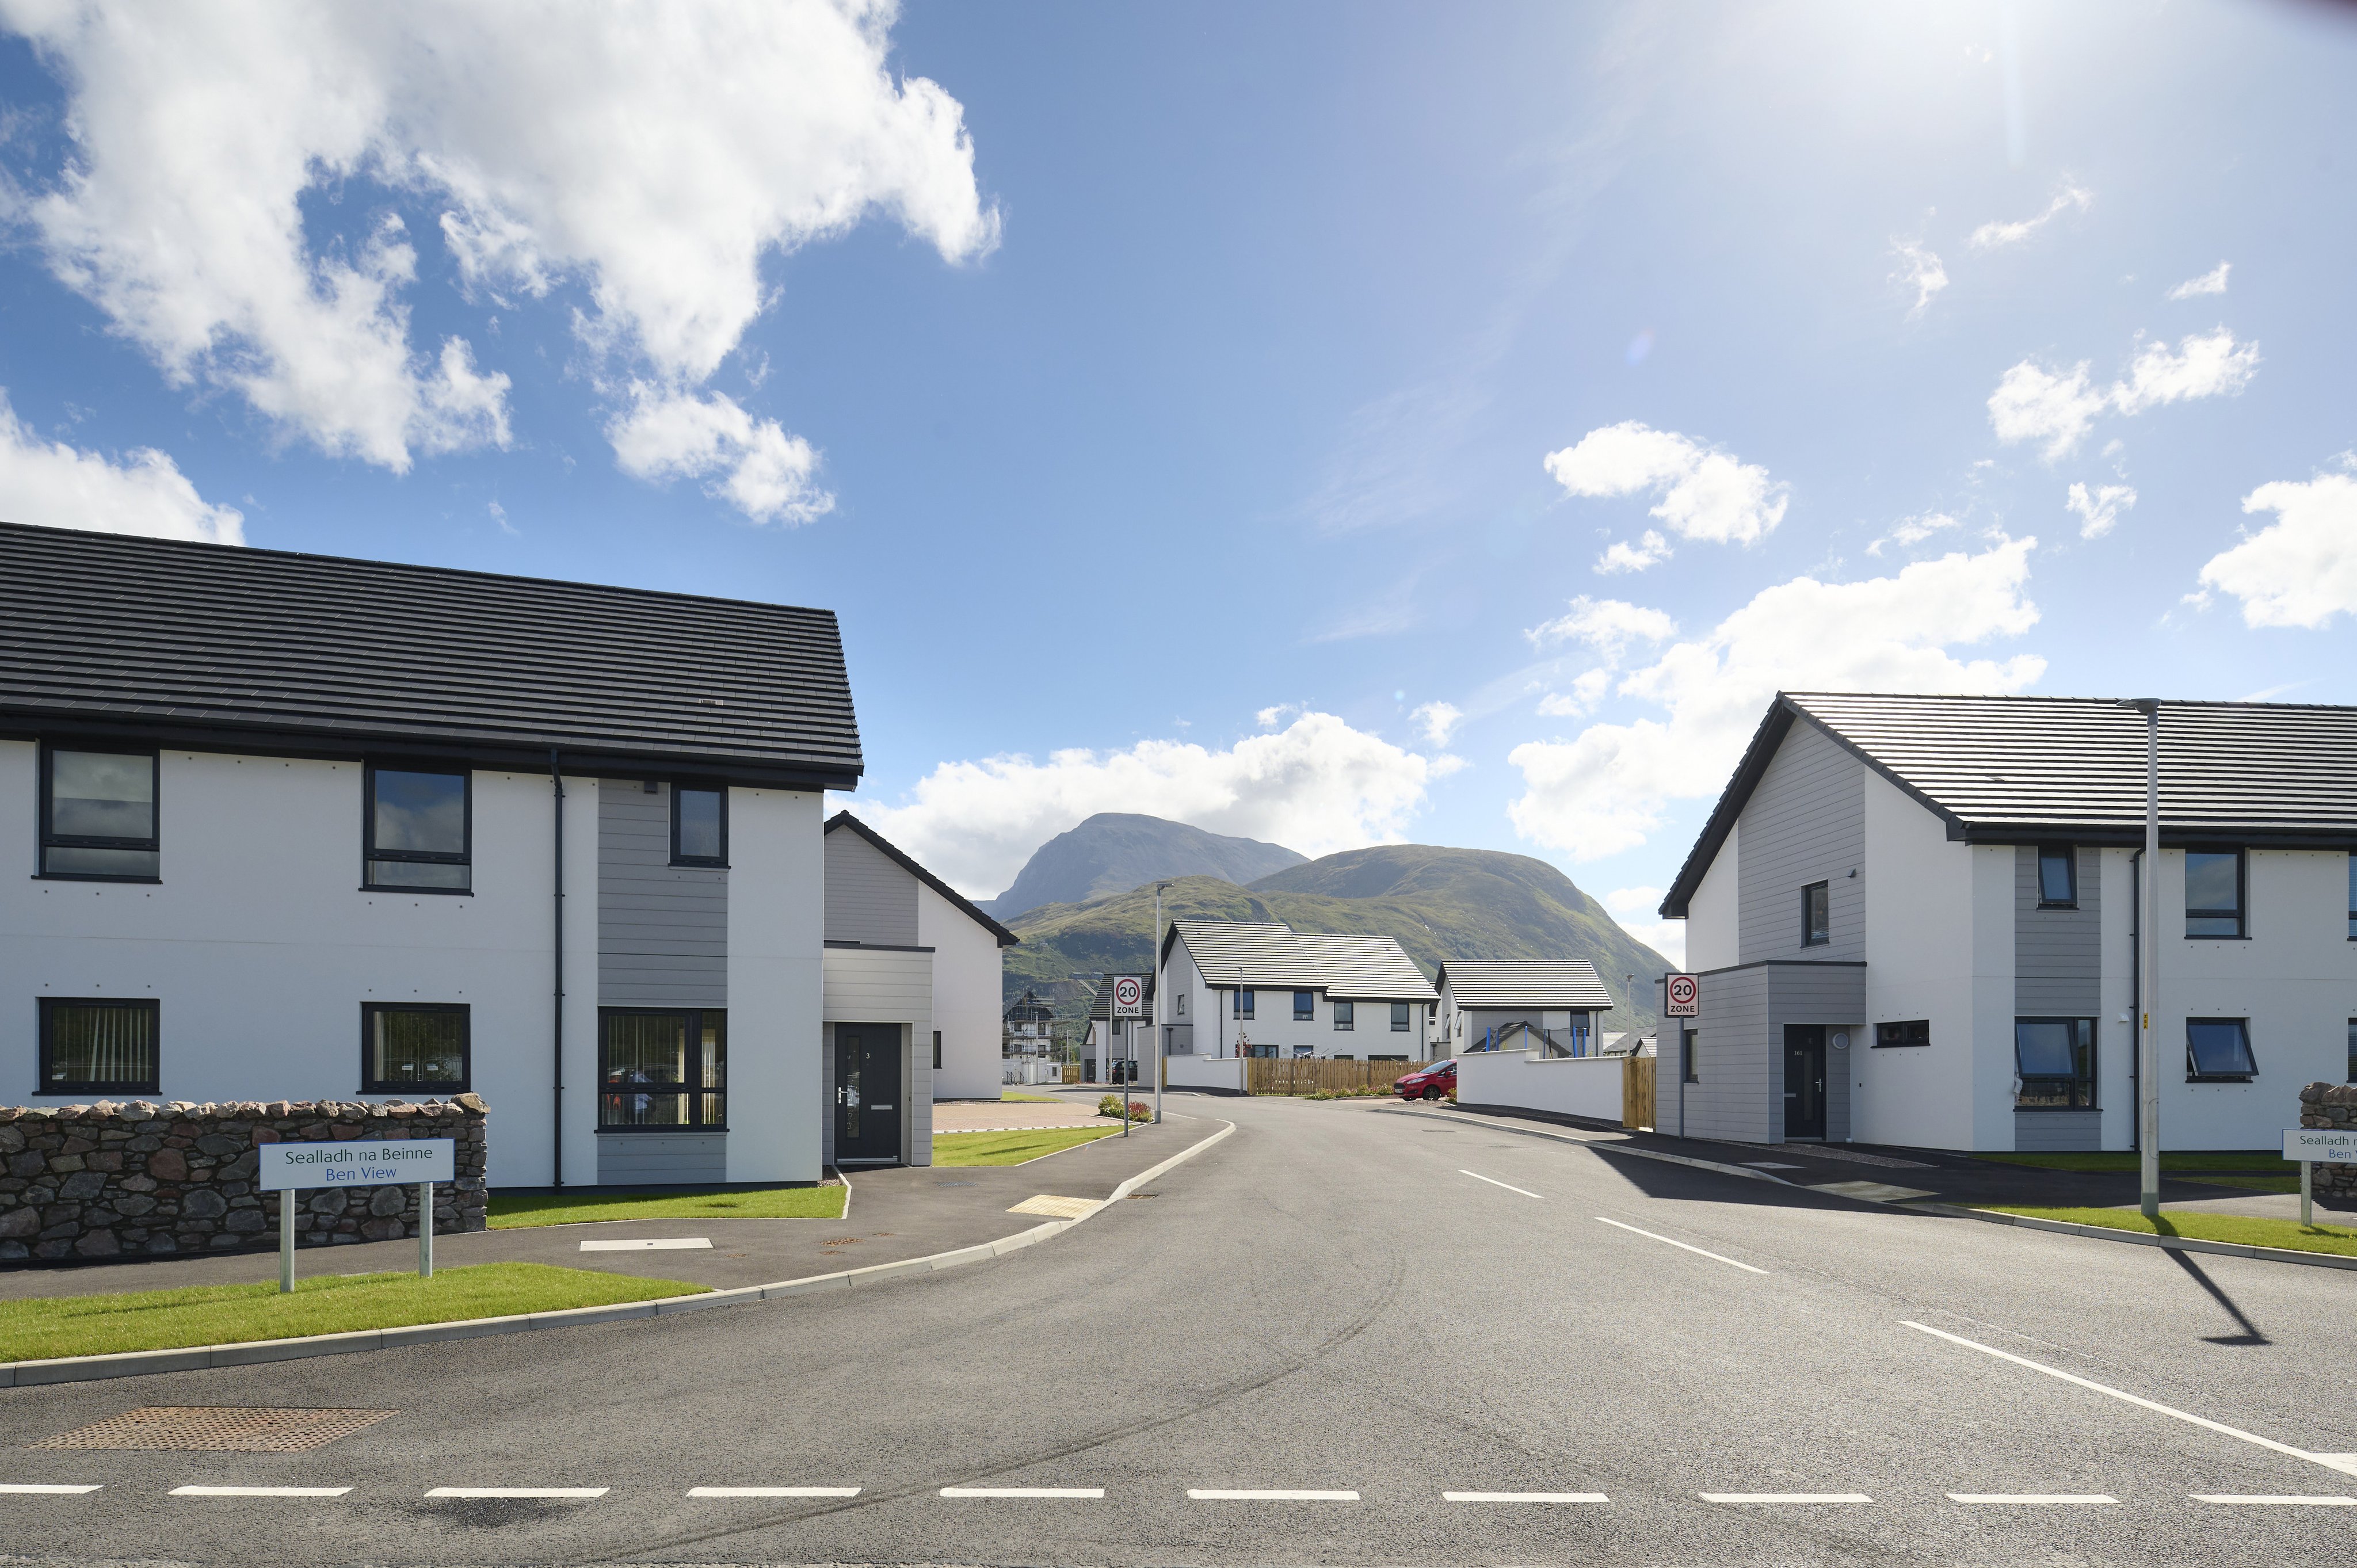 Highlands Affordable Housing Supply Programme delivers 500 homes